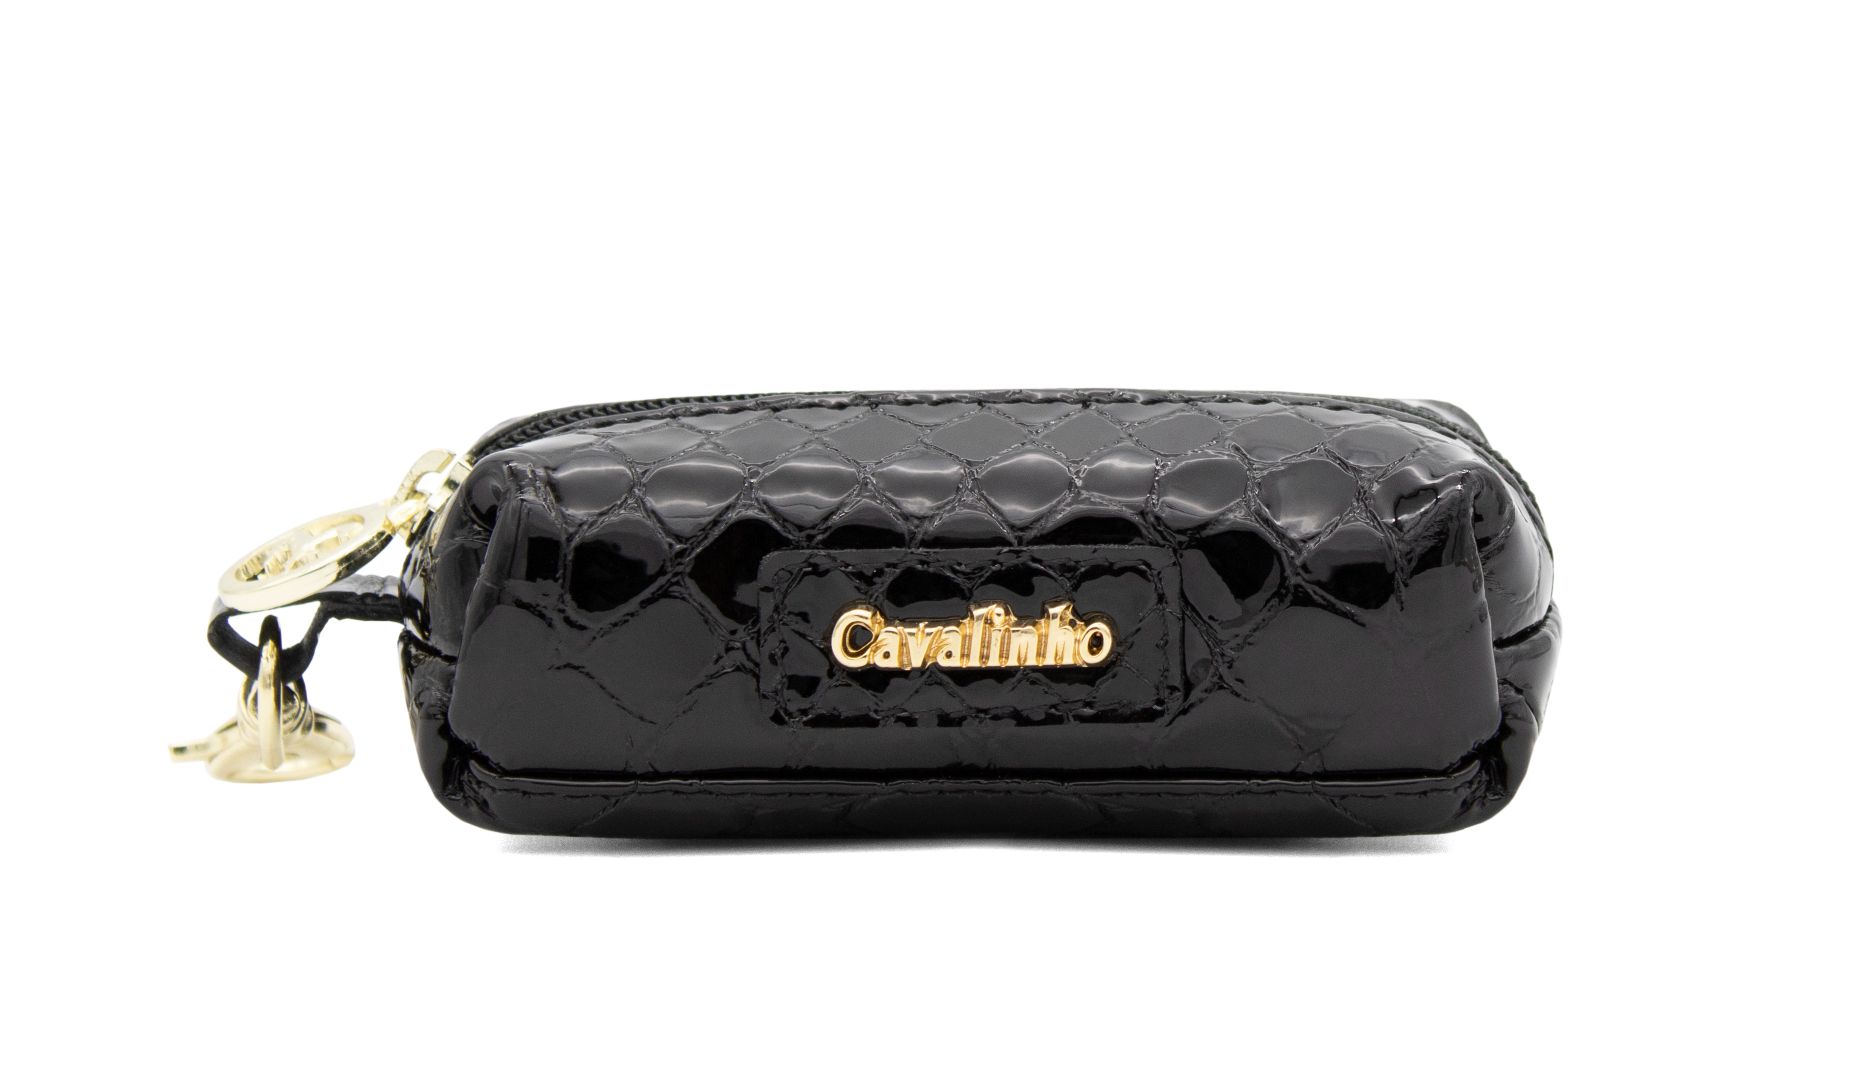 #color_ Black | Cavalinho Gallop Patent Leather Change Purse - Black - 28170276.01_1